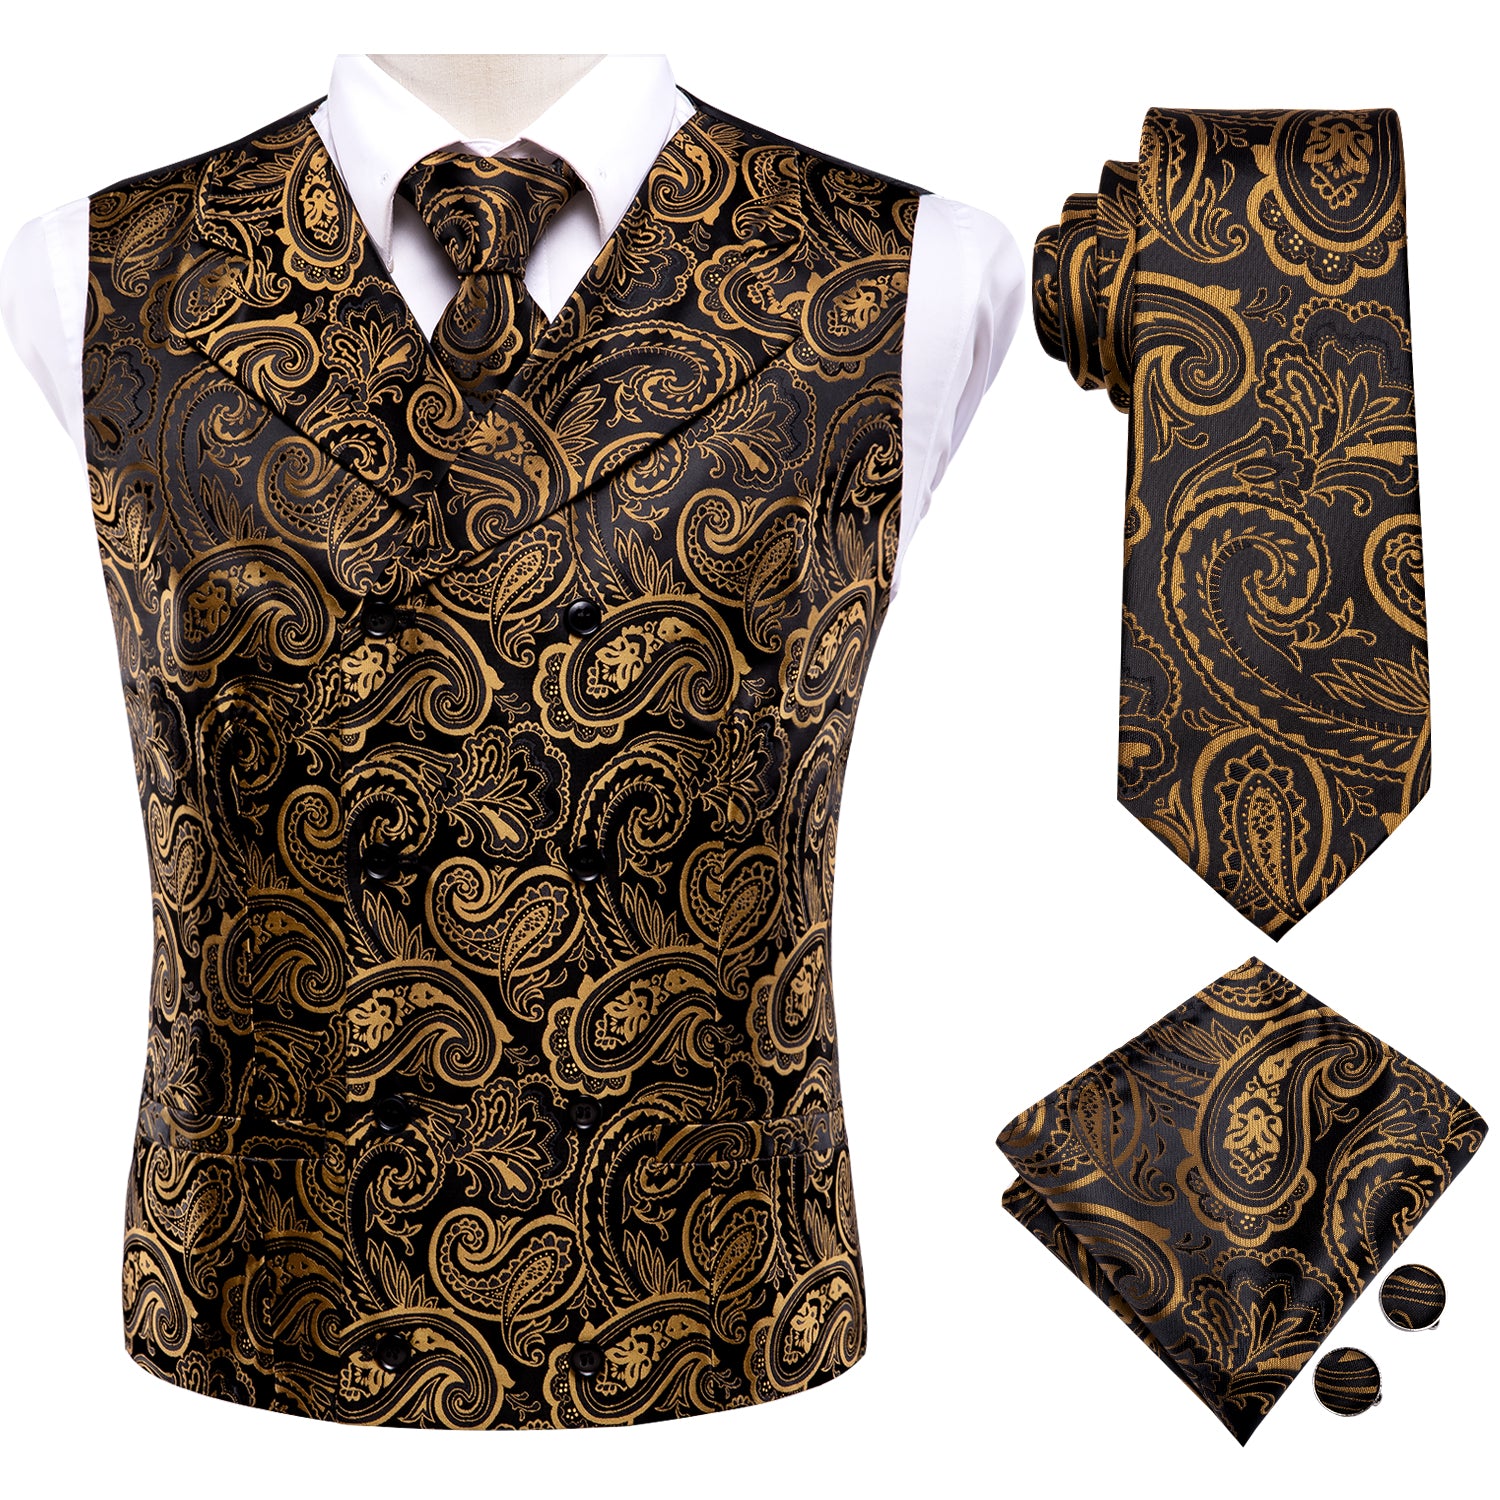 waistcoat necktie pocket square and cufflink in same pattern